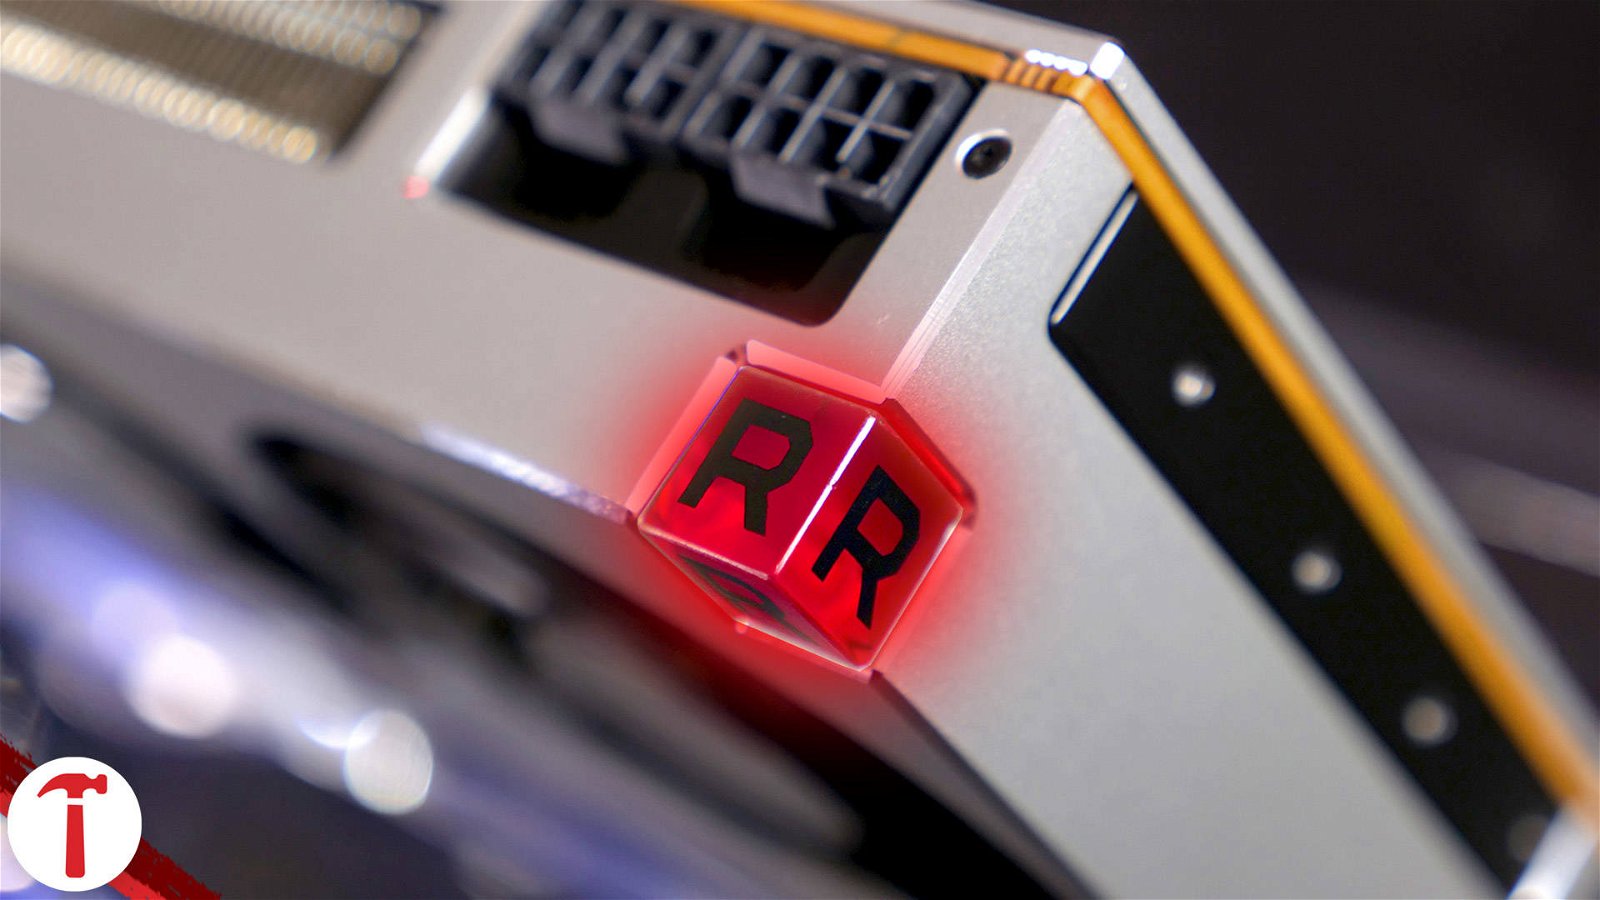 Immagine di AMD Radeon VII recensione, GPU Vega a 7 nanometri e 16 GB di memoria